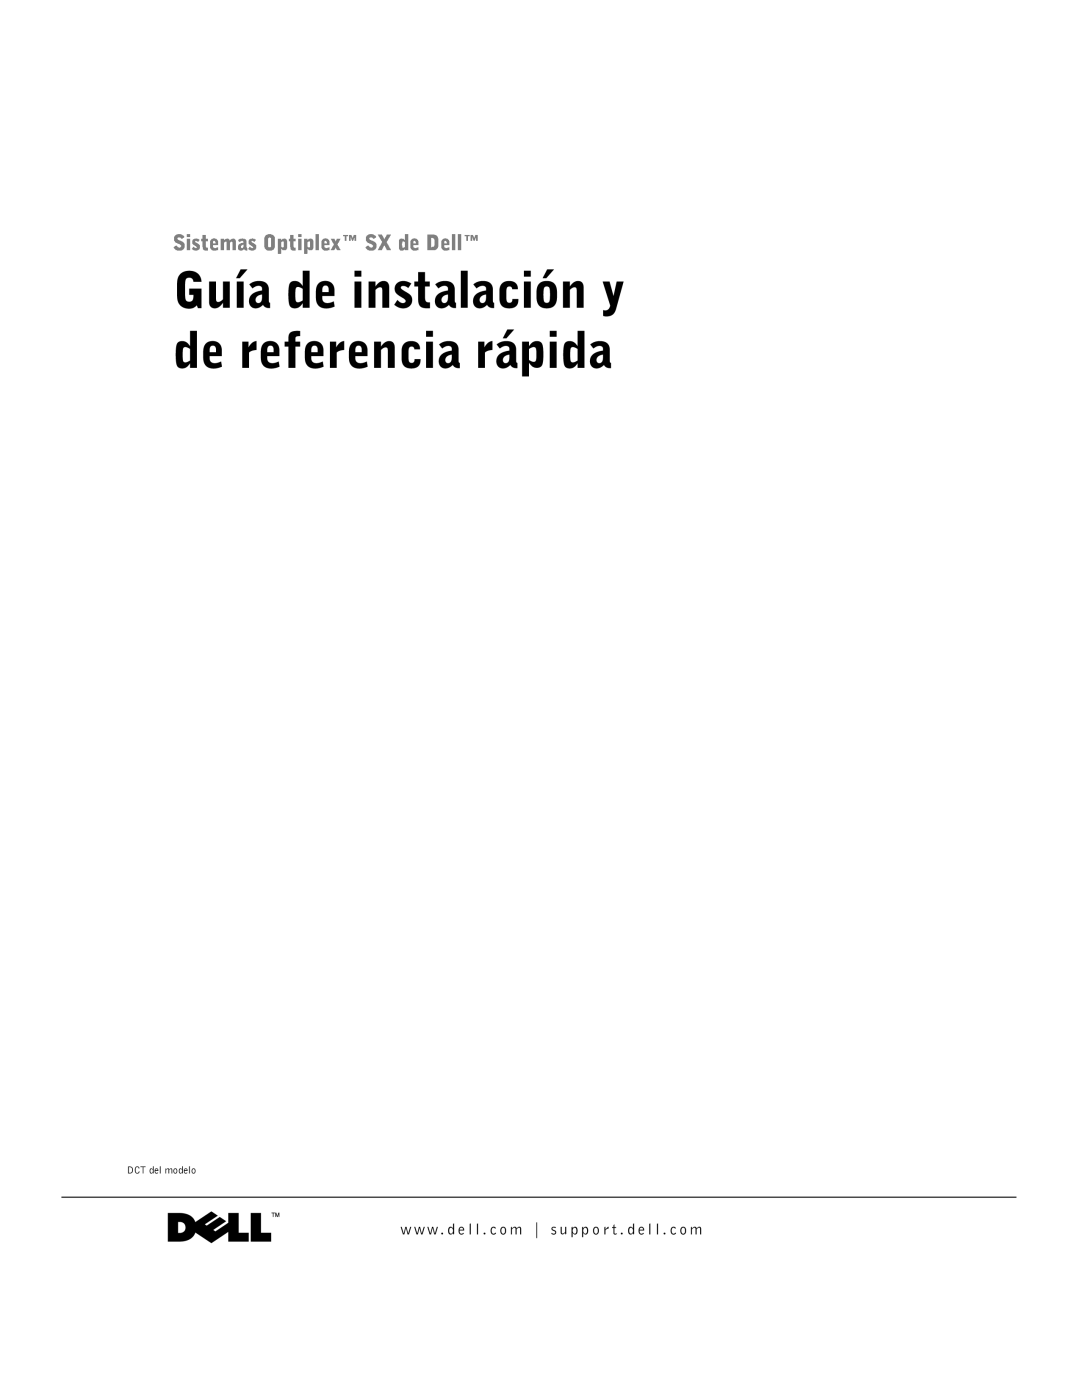 Dell manual Guía de instalación y de referencia rápida, Sistemas Optiplex SX de Dell, DCT del modelo 